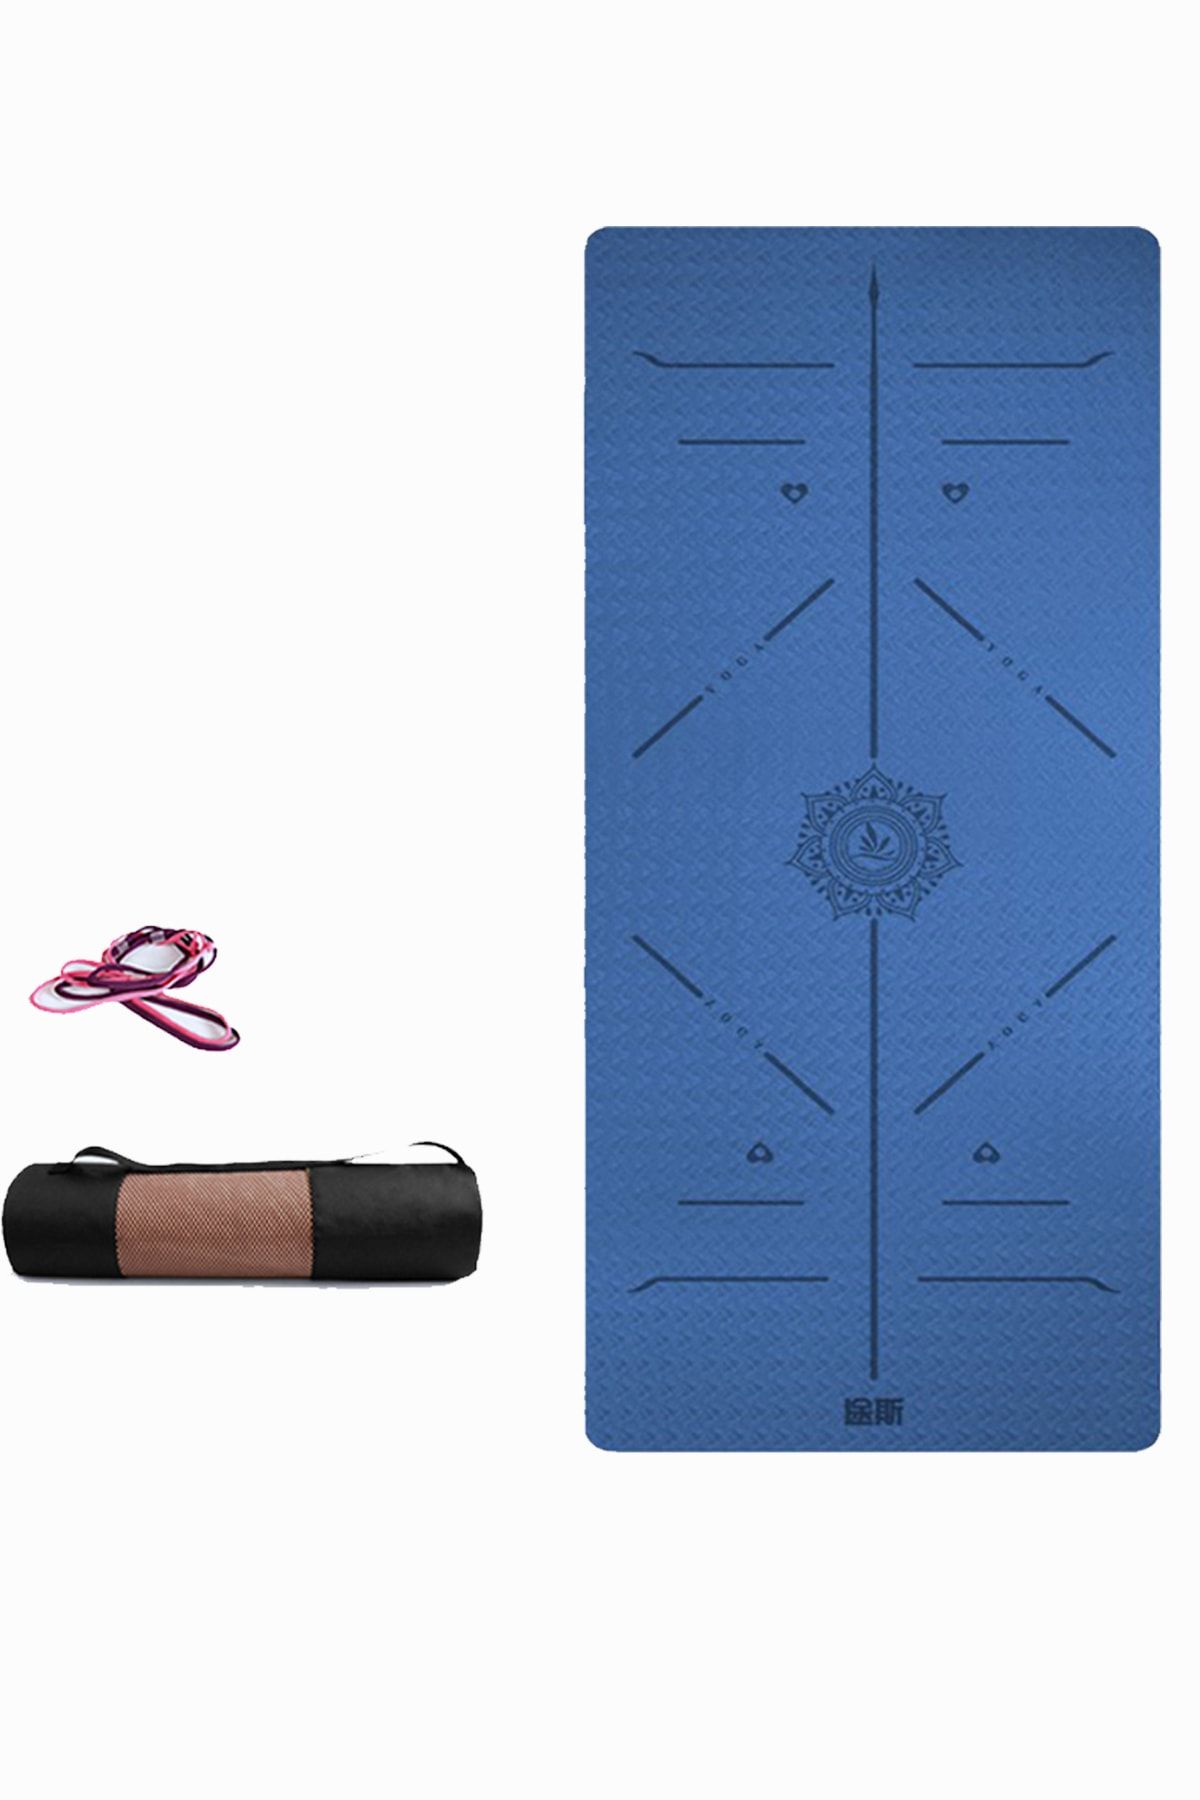 TUSI Lacivert Yoga Matı Ve Pilates Minderi Tpe 183cmx0.8cmx68cm